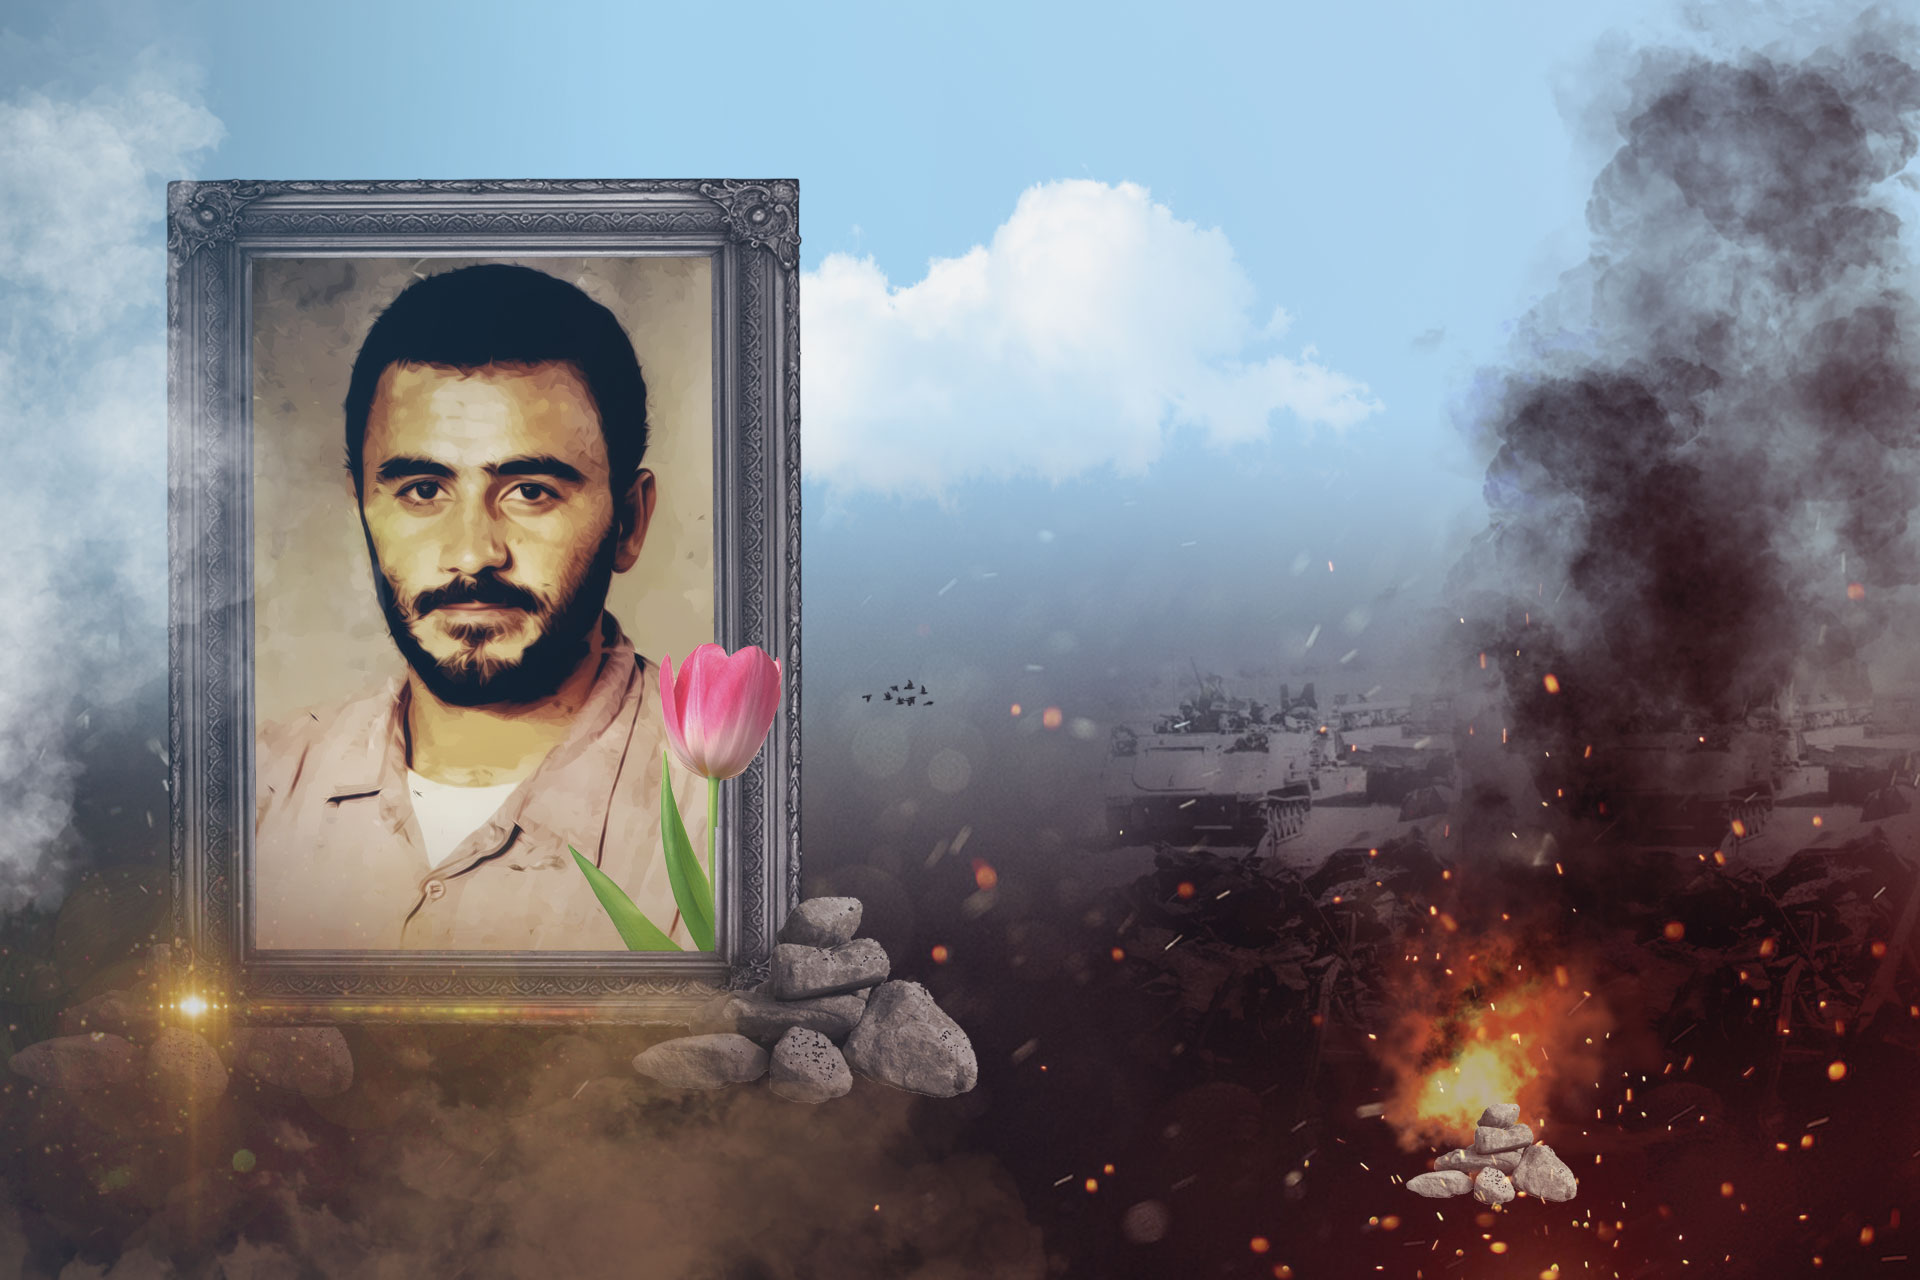 الإستشهادي أسعد حسين برو